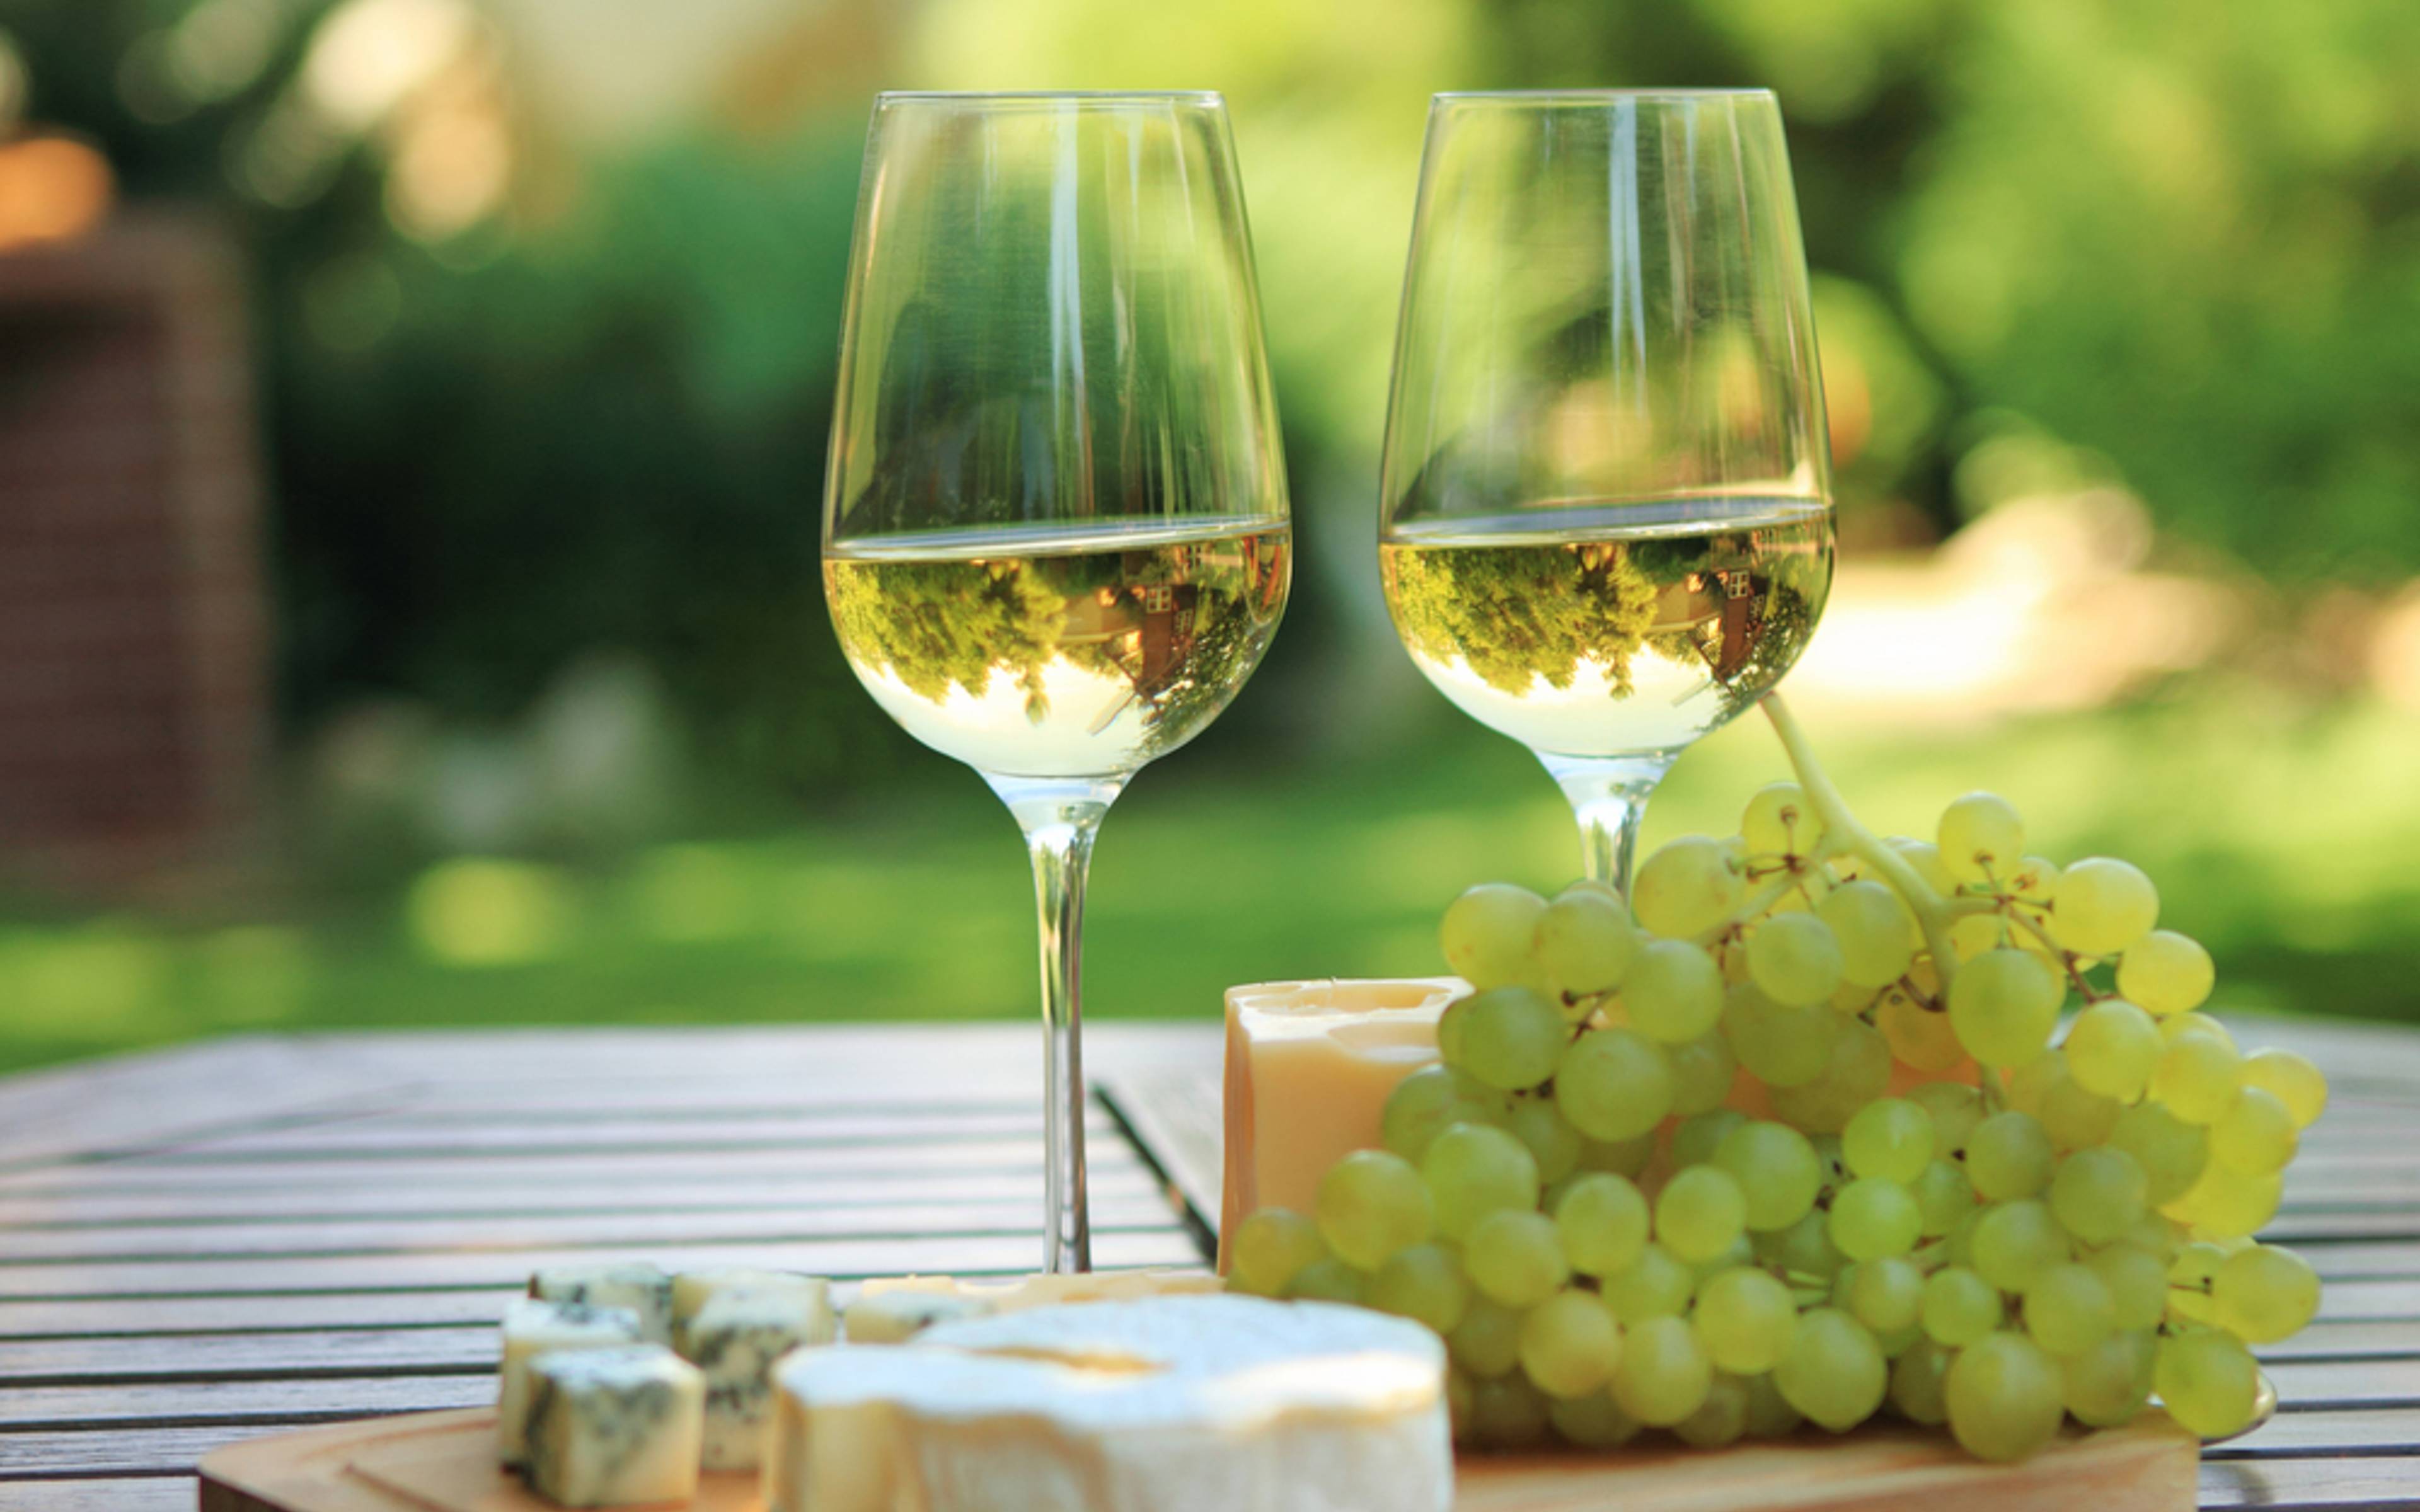 Entdecken Sie Bordeaux, probieren Sie seine Weine und Käse